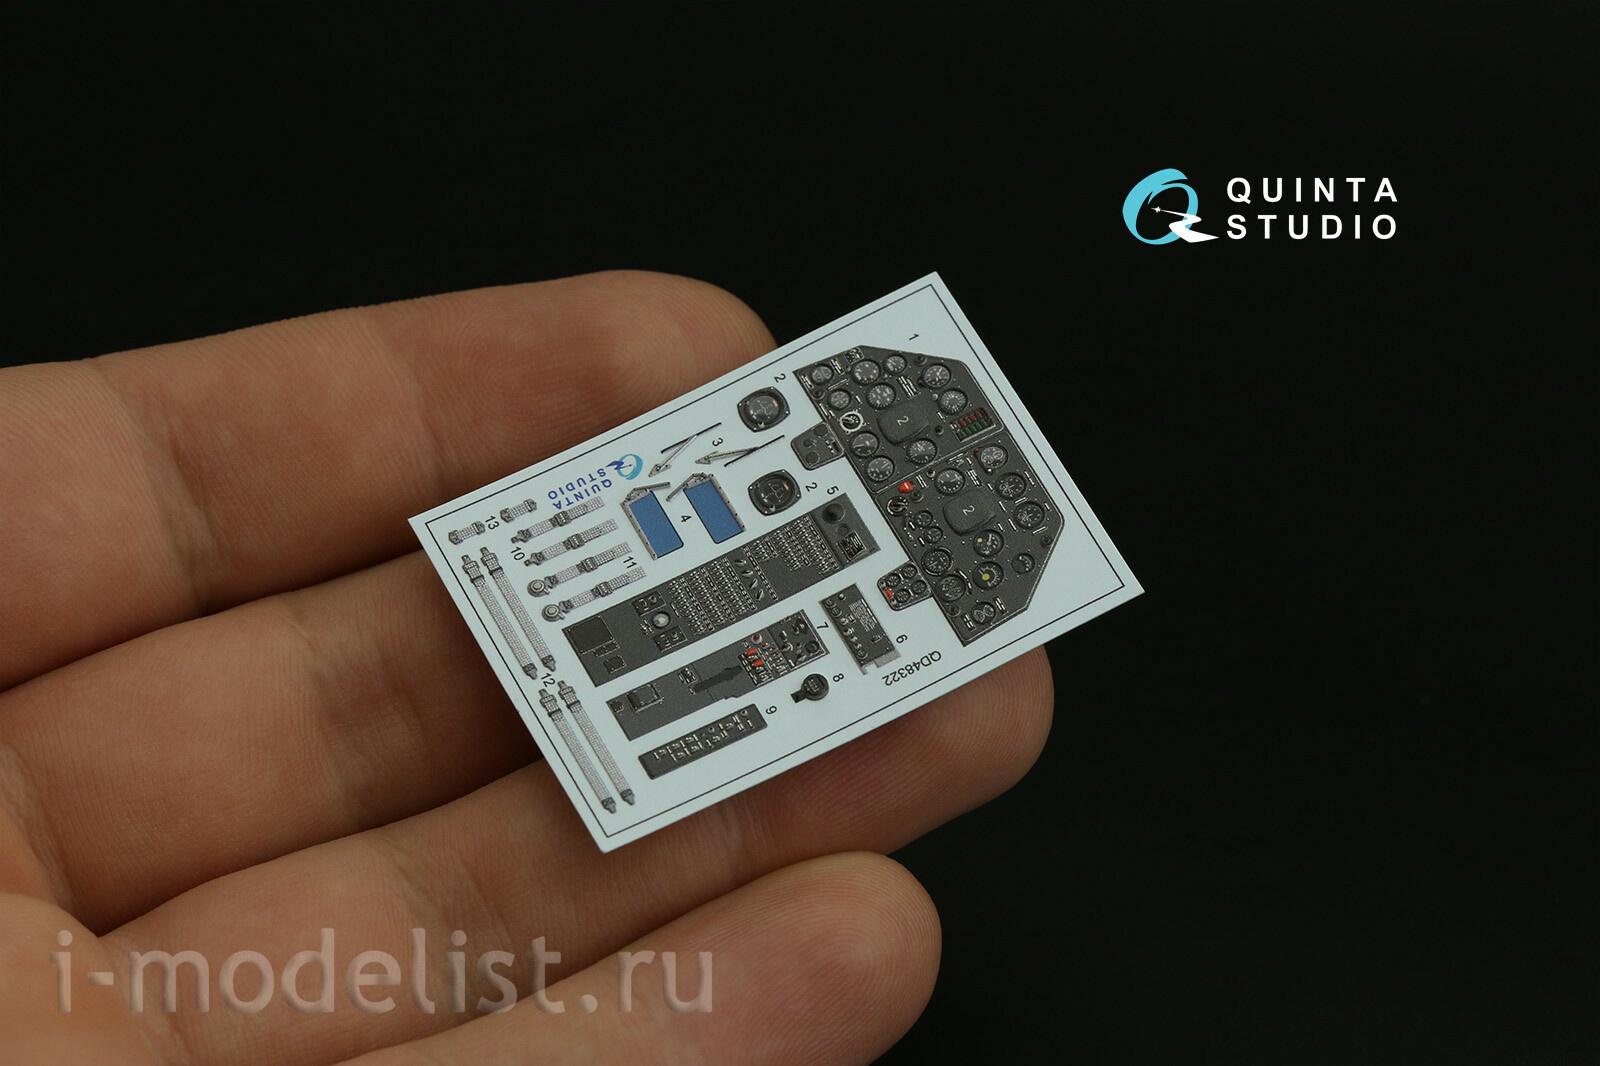 QD48322 Quinta Studio 1/48 3D Декаль интерьера кабины Мu-4 (Трубач)